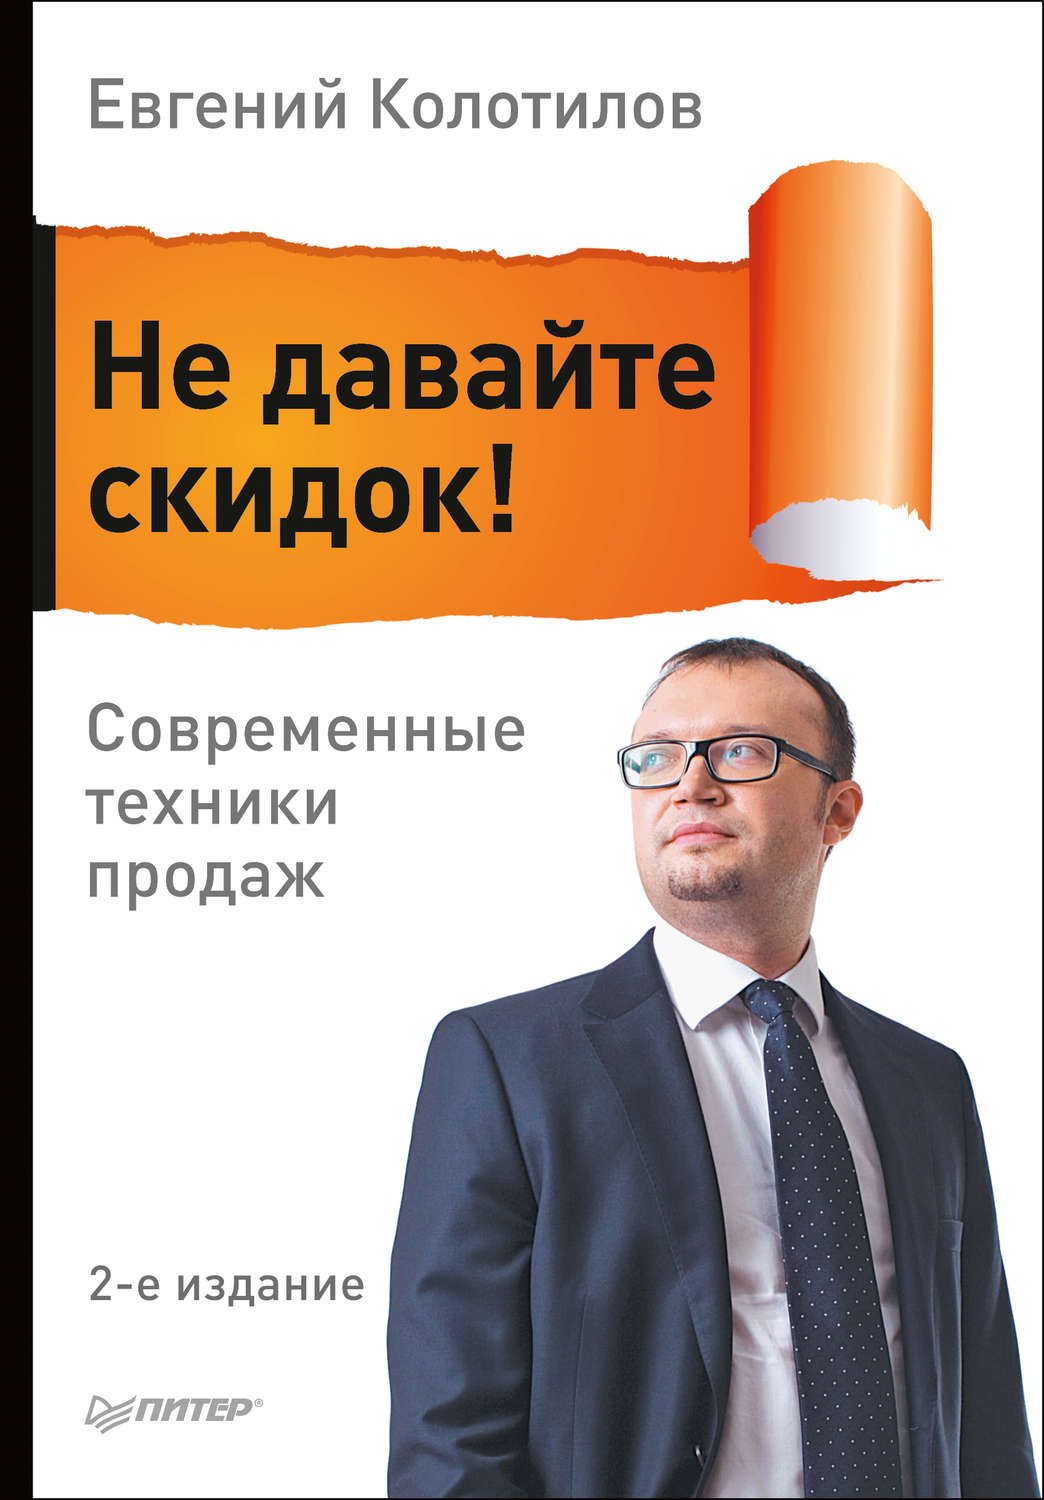 Евгений колотилов книги скачать бесплатно